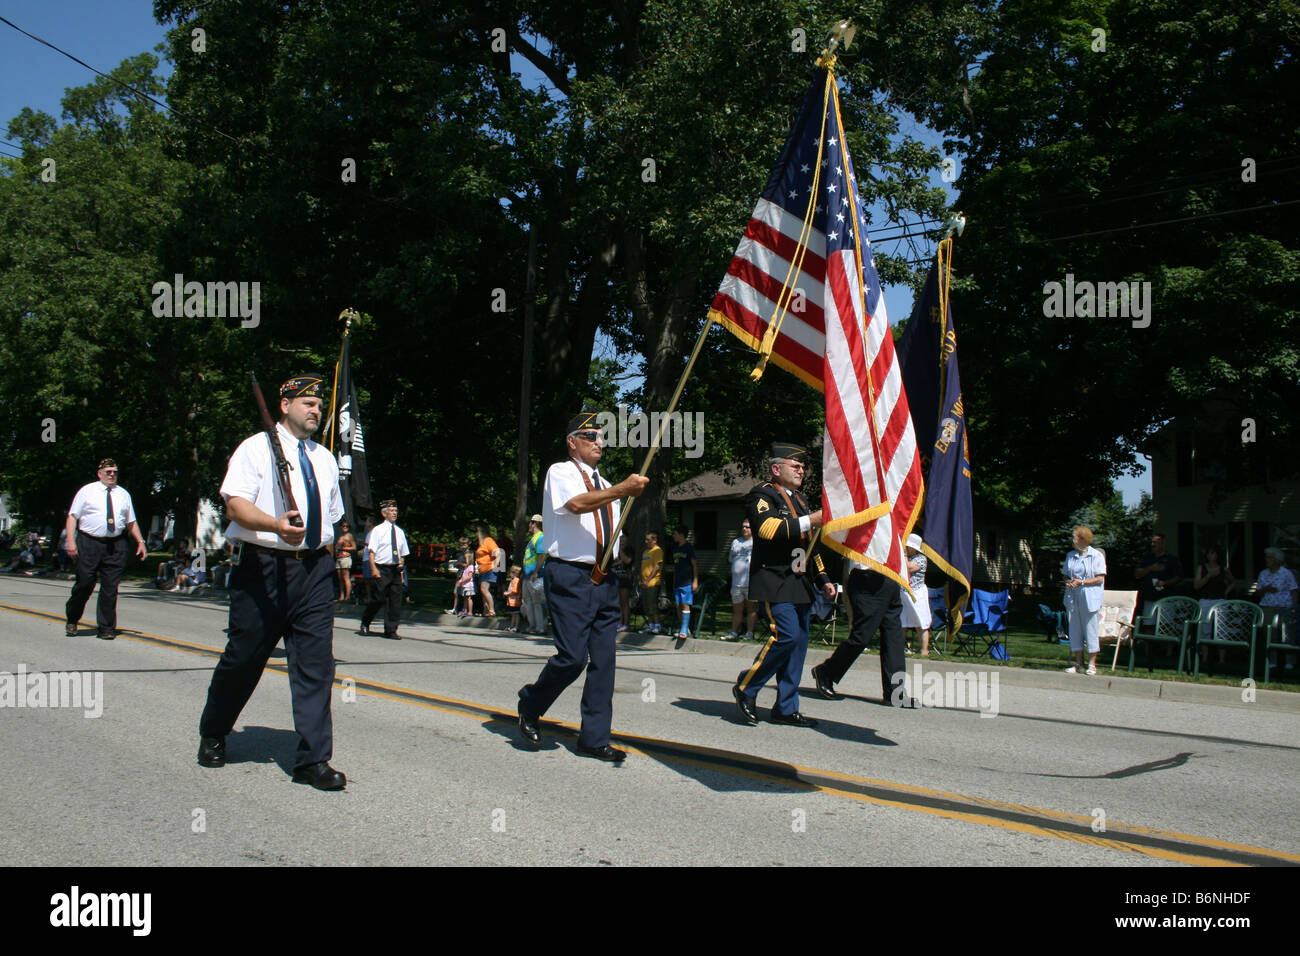 Les anciens combattants des guerres étrangères parade marching in USA Banque D'Images